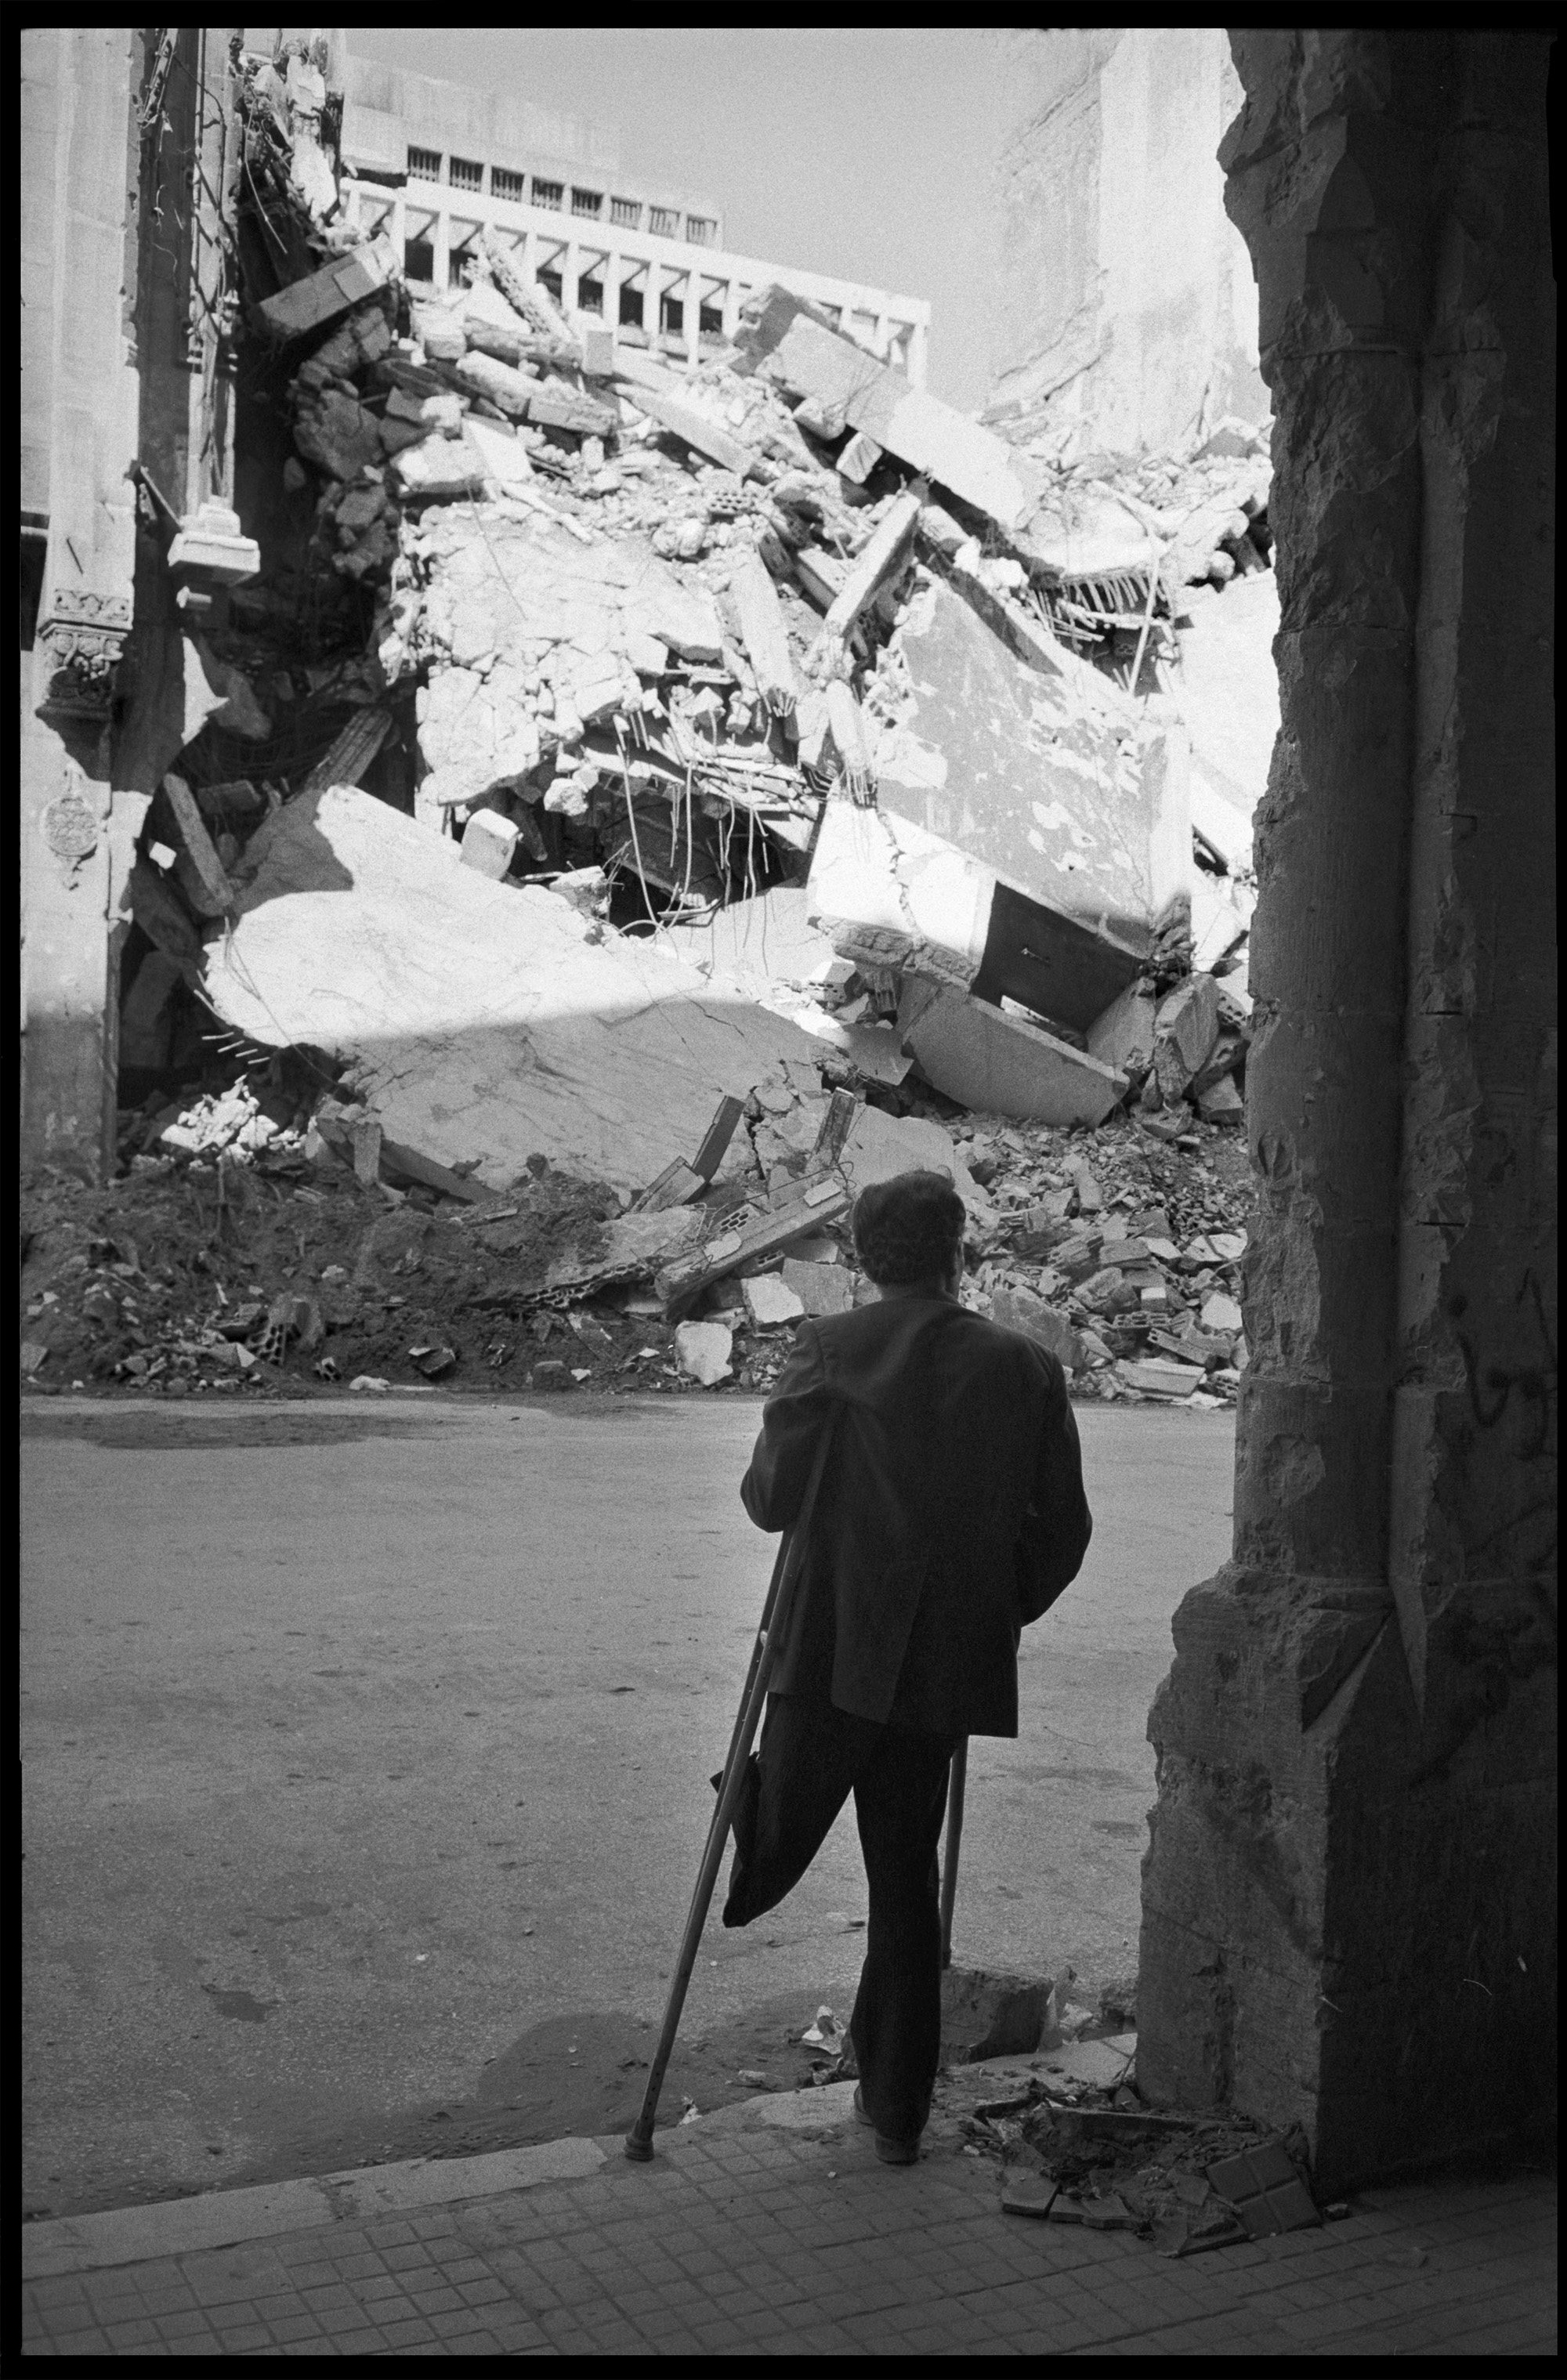 Beyrouth, Liban, 1977. Un homme amputé de la jambe gauche, vraisemblablement à cause de la guerre civile, observe un bâtiment détruit par un bombardement.